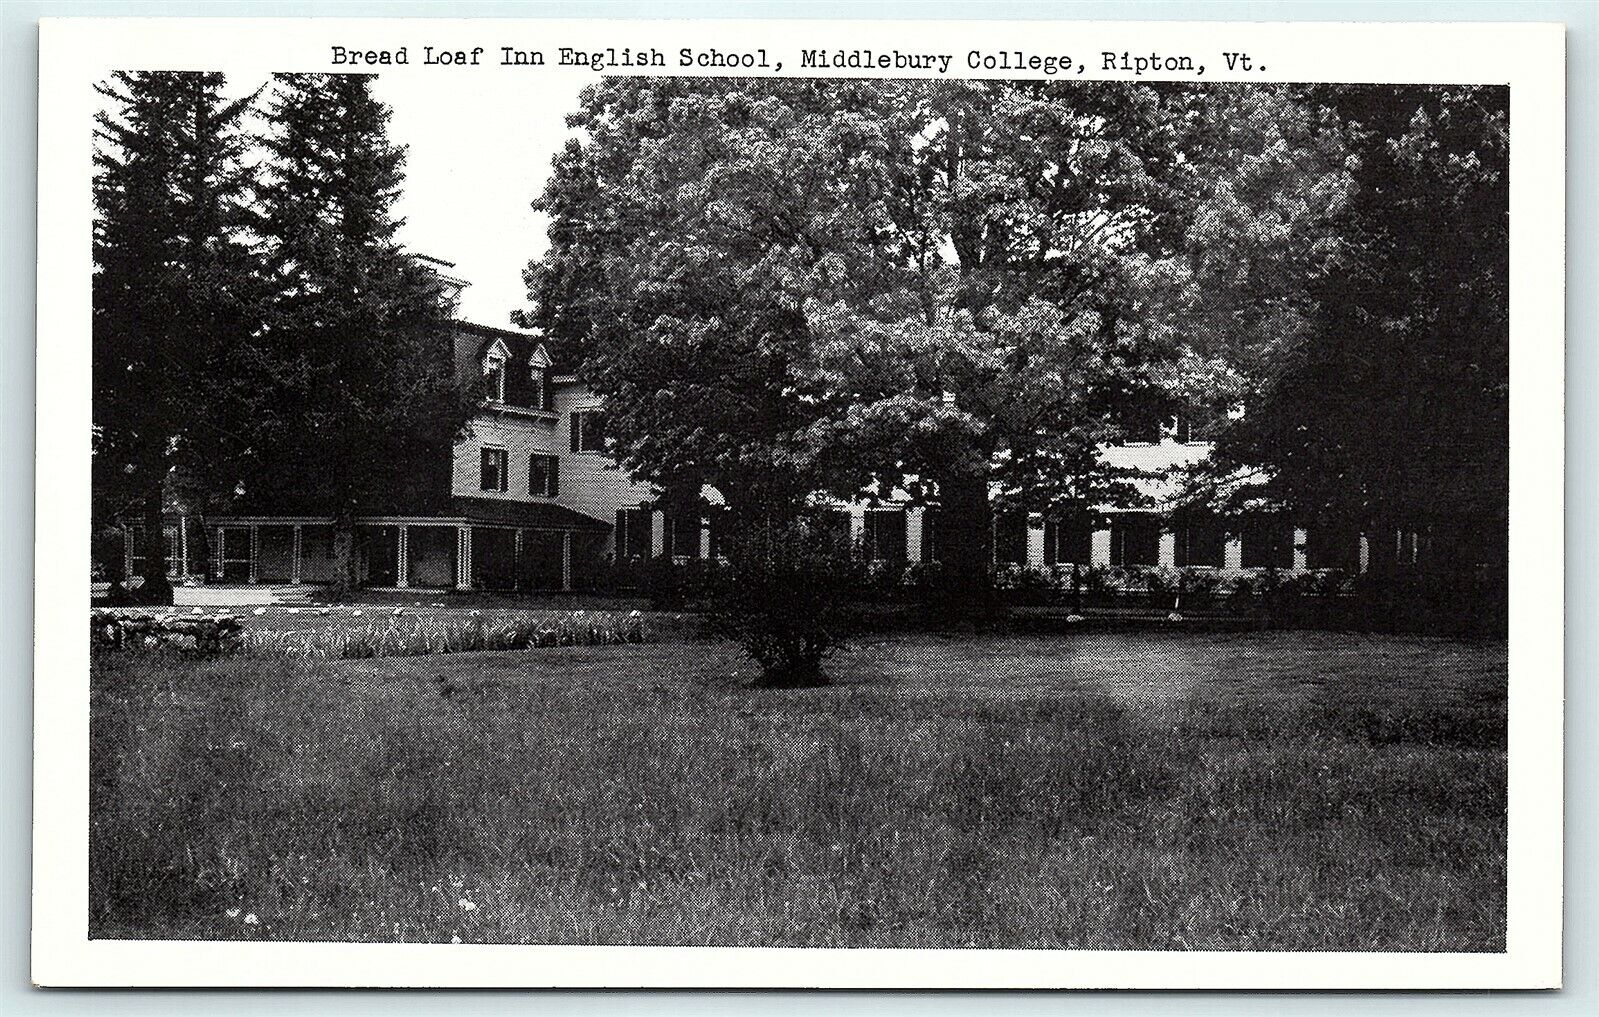 Postcard VT Ripton Bread Loaf Inn English School Middlebury College R46